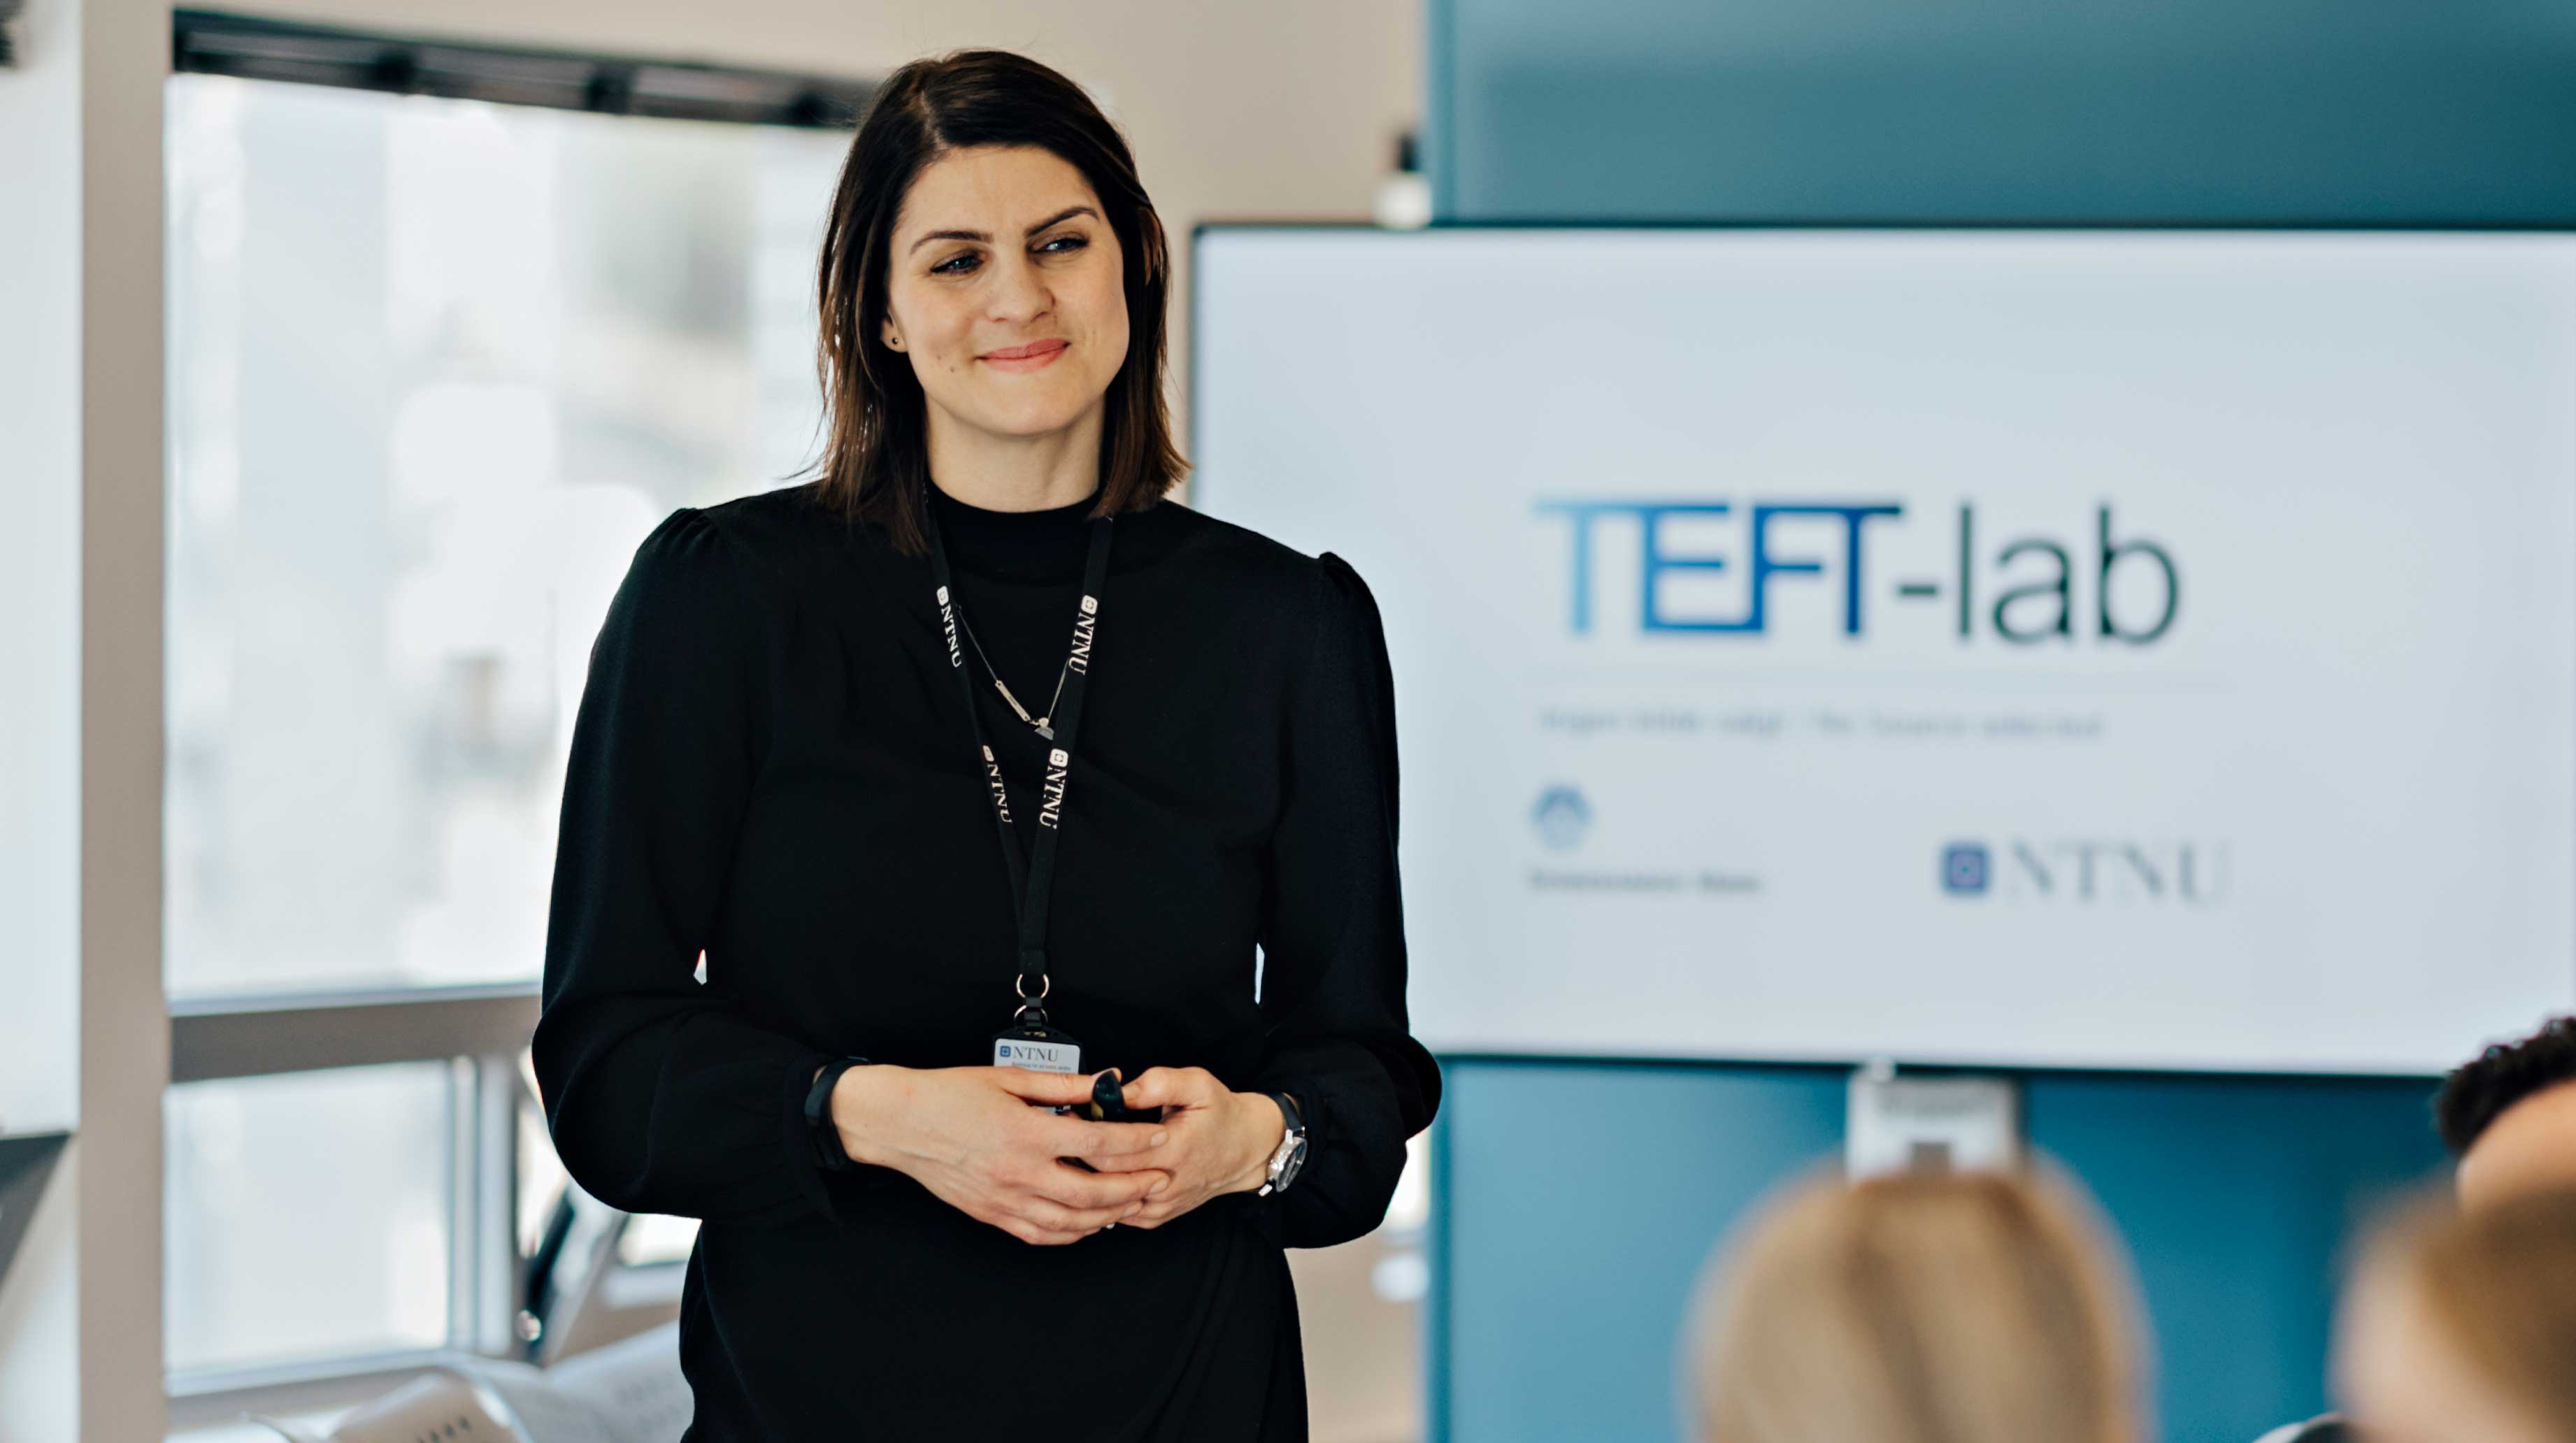 Kvinne holder presentasjon foran skjerm hvor det står TEFT-lab